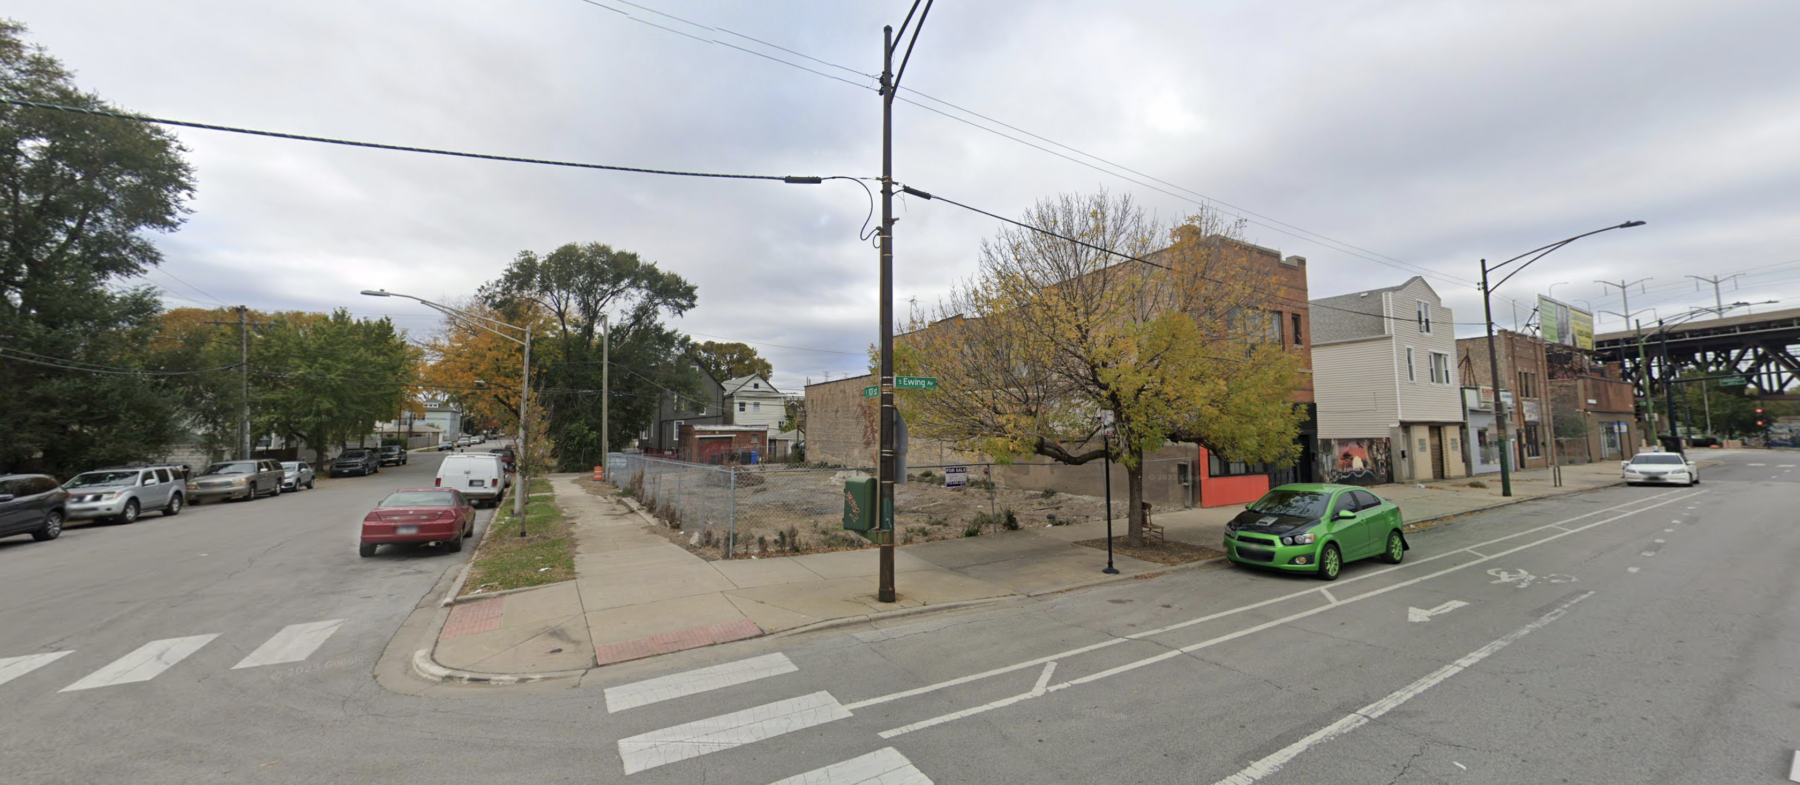 10062 S Ewing Avenue via Google Maps